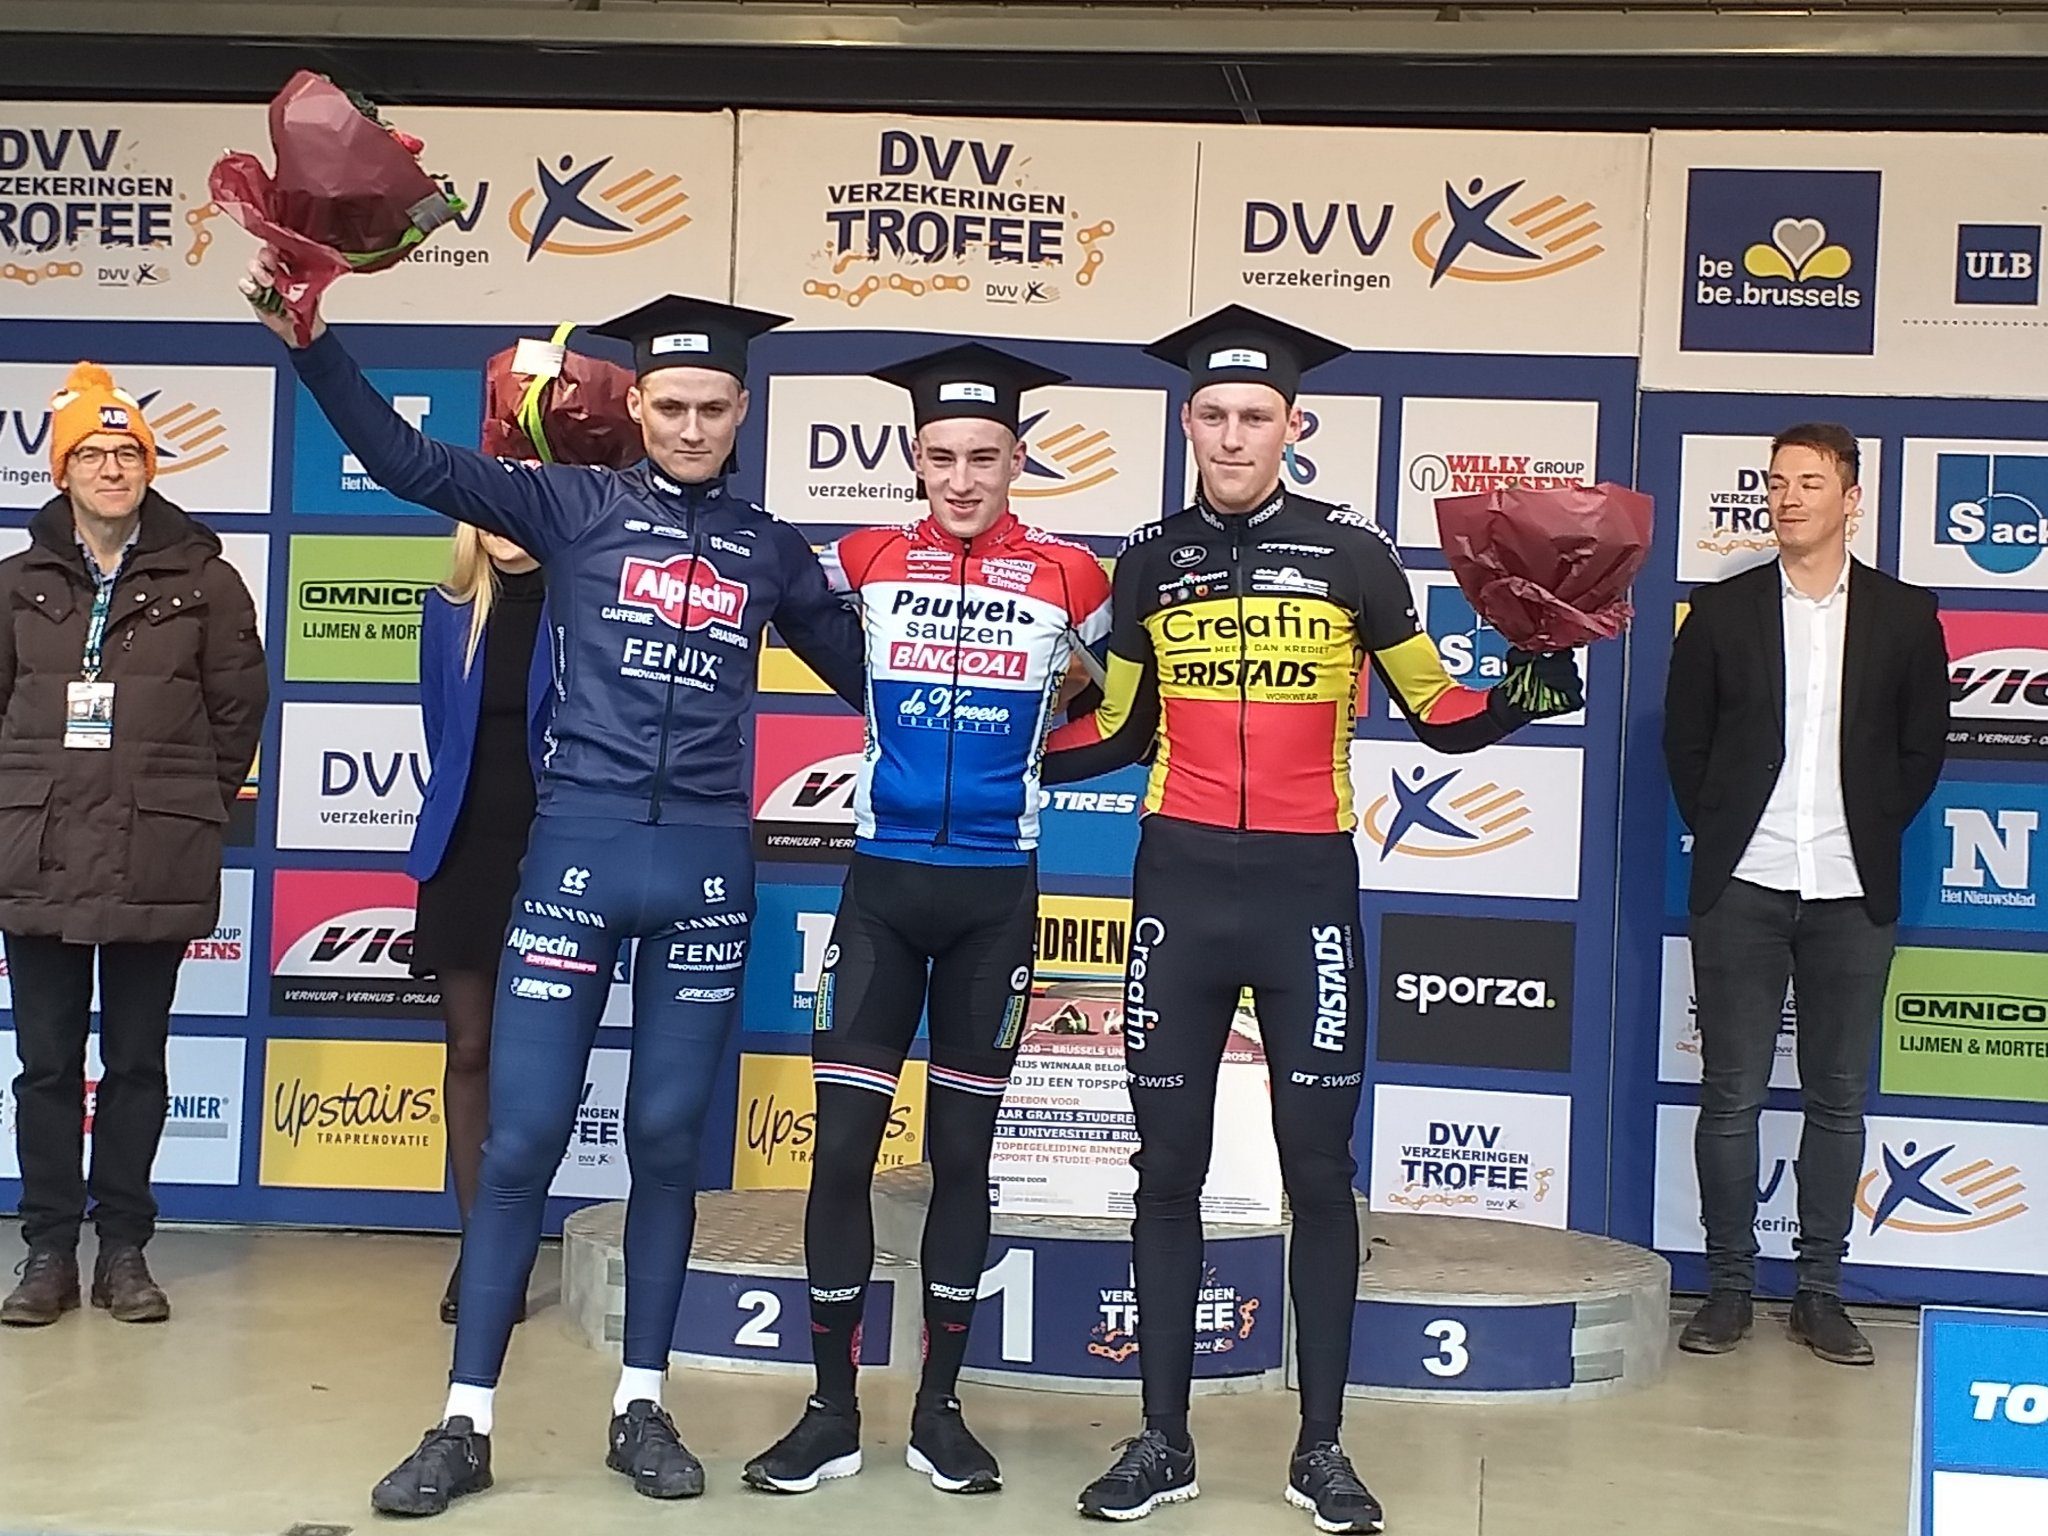 Райан Камп оказался лучшим среди андеров на велокроссе DVV Trofee Brussels